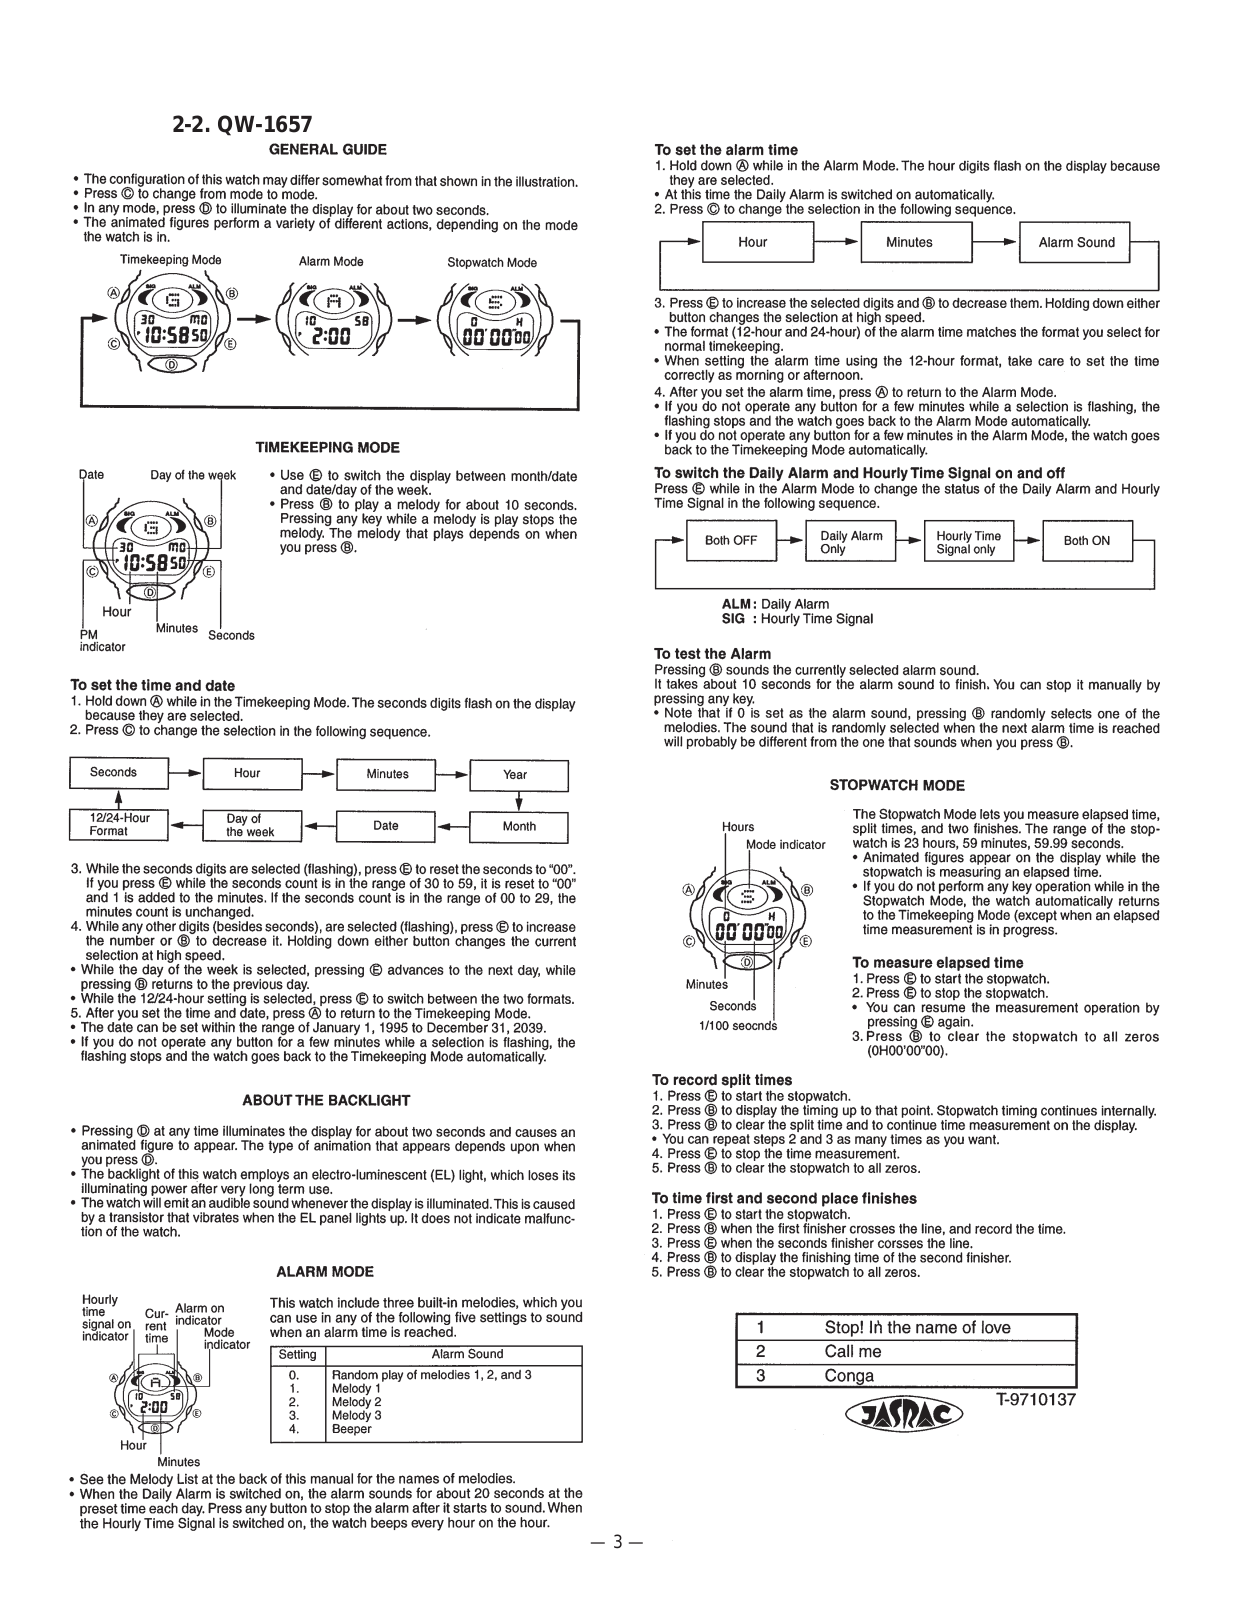 Casio 1657 Owner's Manual